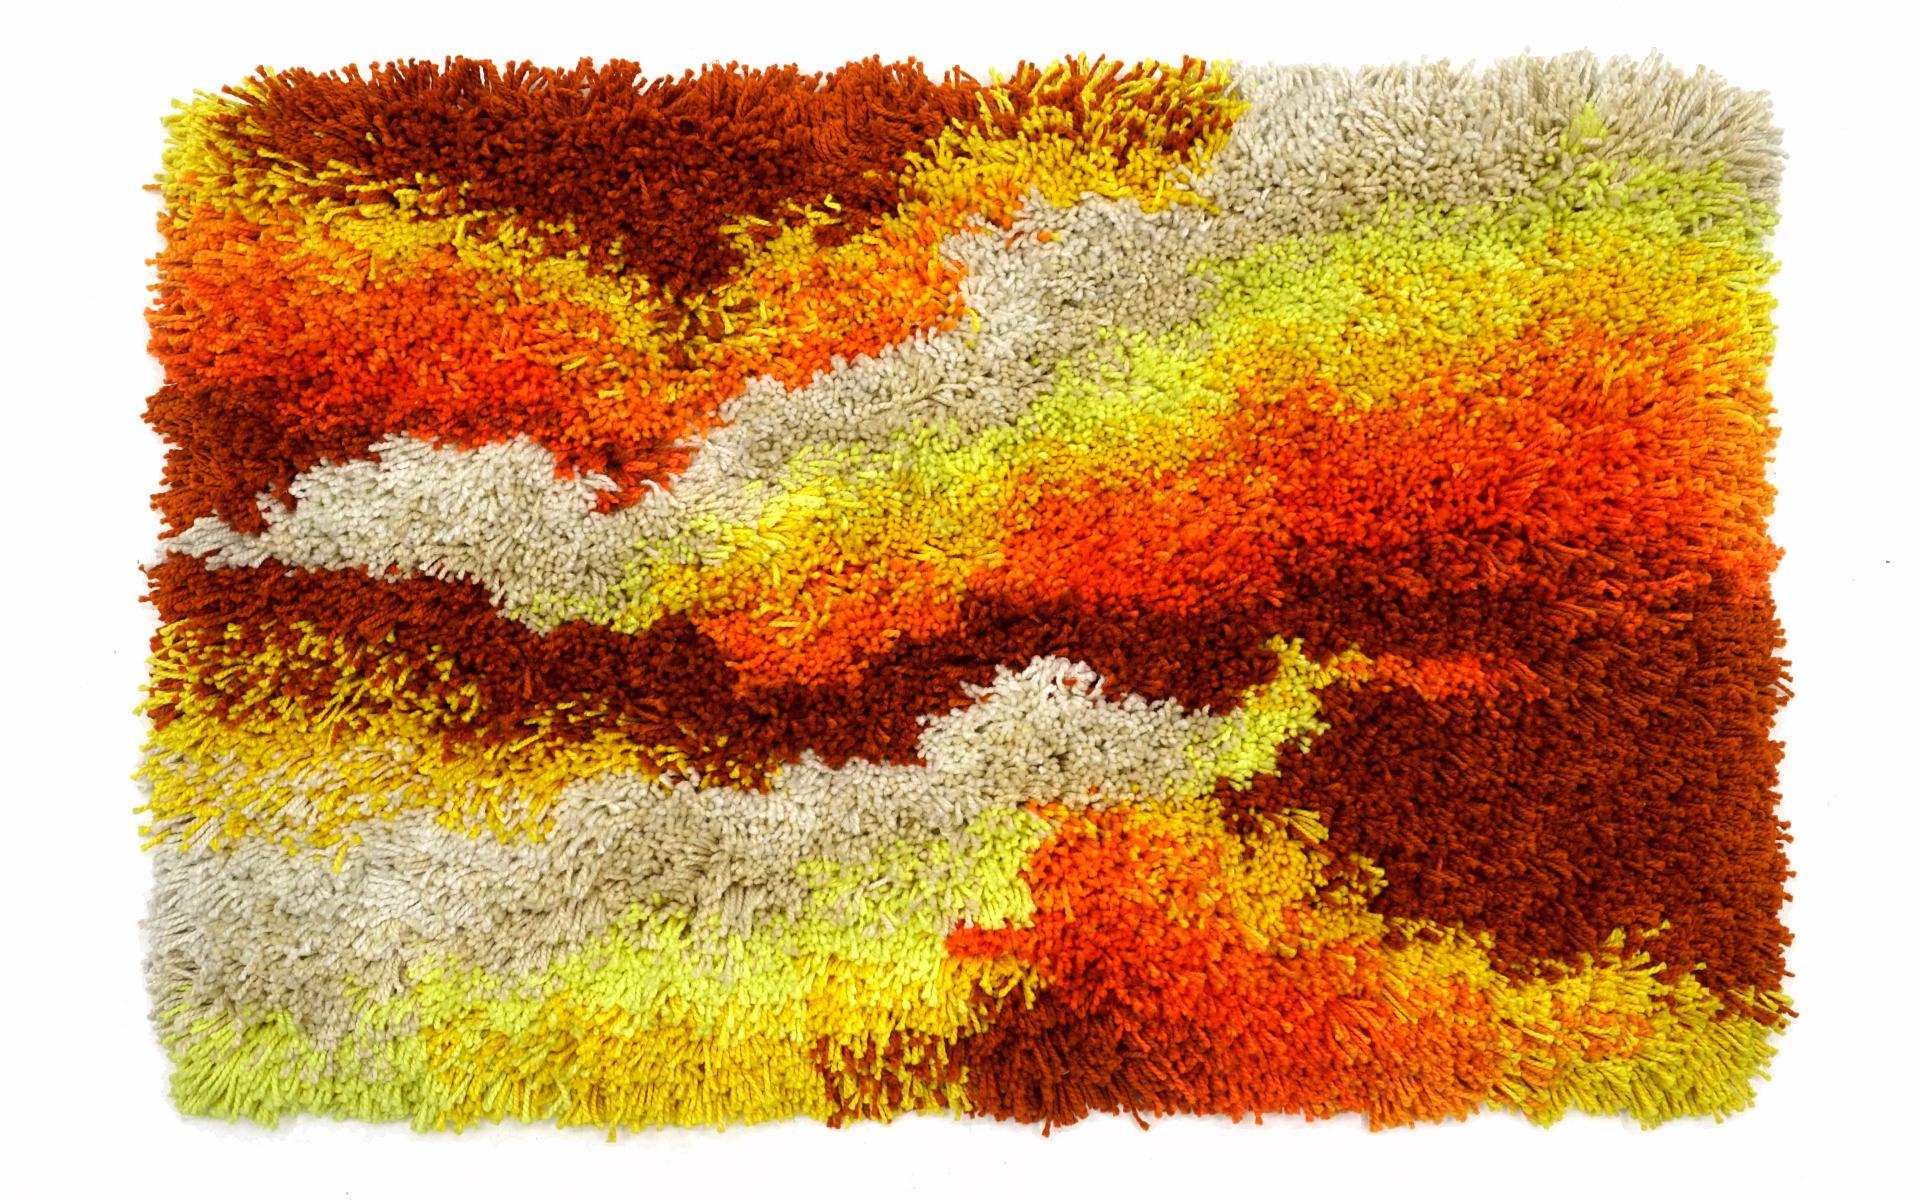 Schöner mehrfarbiger Rya-Teppich mit Befestigung an der Hand als Wandteppich.  Es wurde vom ursprünglichen Besitzer erworben und wurde nie auf dem Boden benutzt.  Sehr guter bis ausgezeichneter Zustand.  Keine Abnutzung, Flecken, etc.etc.  